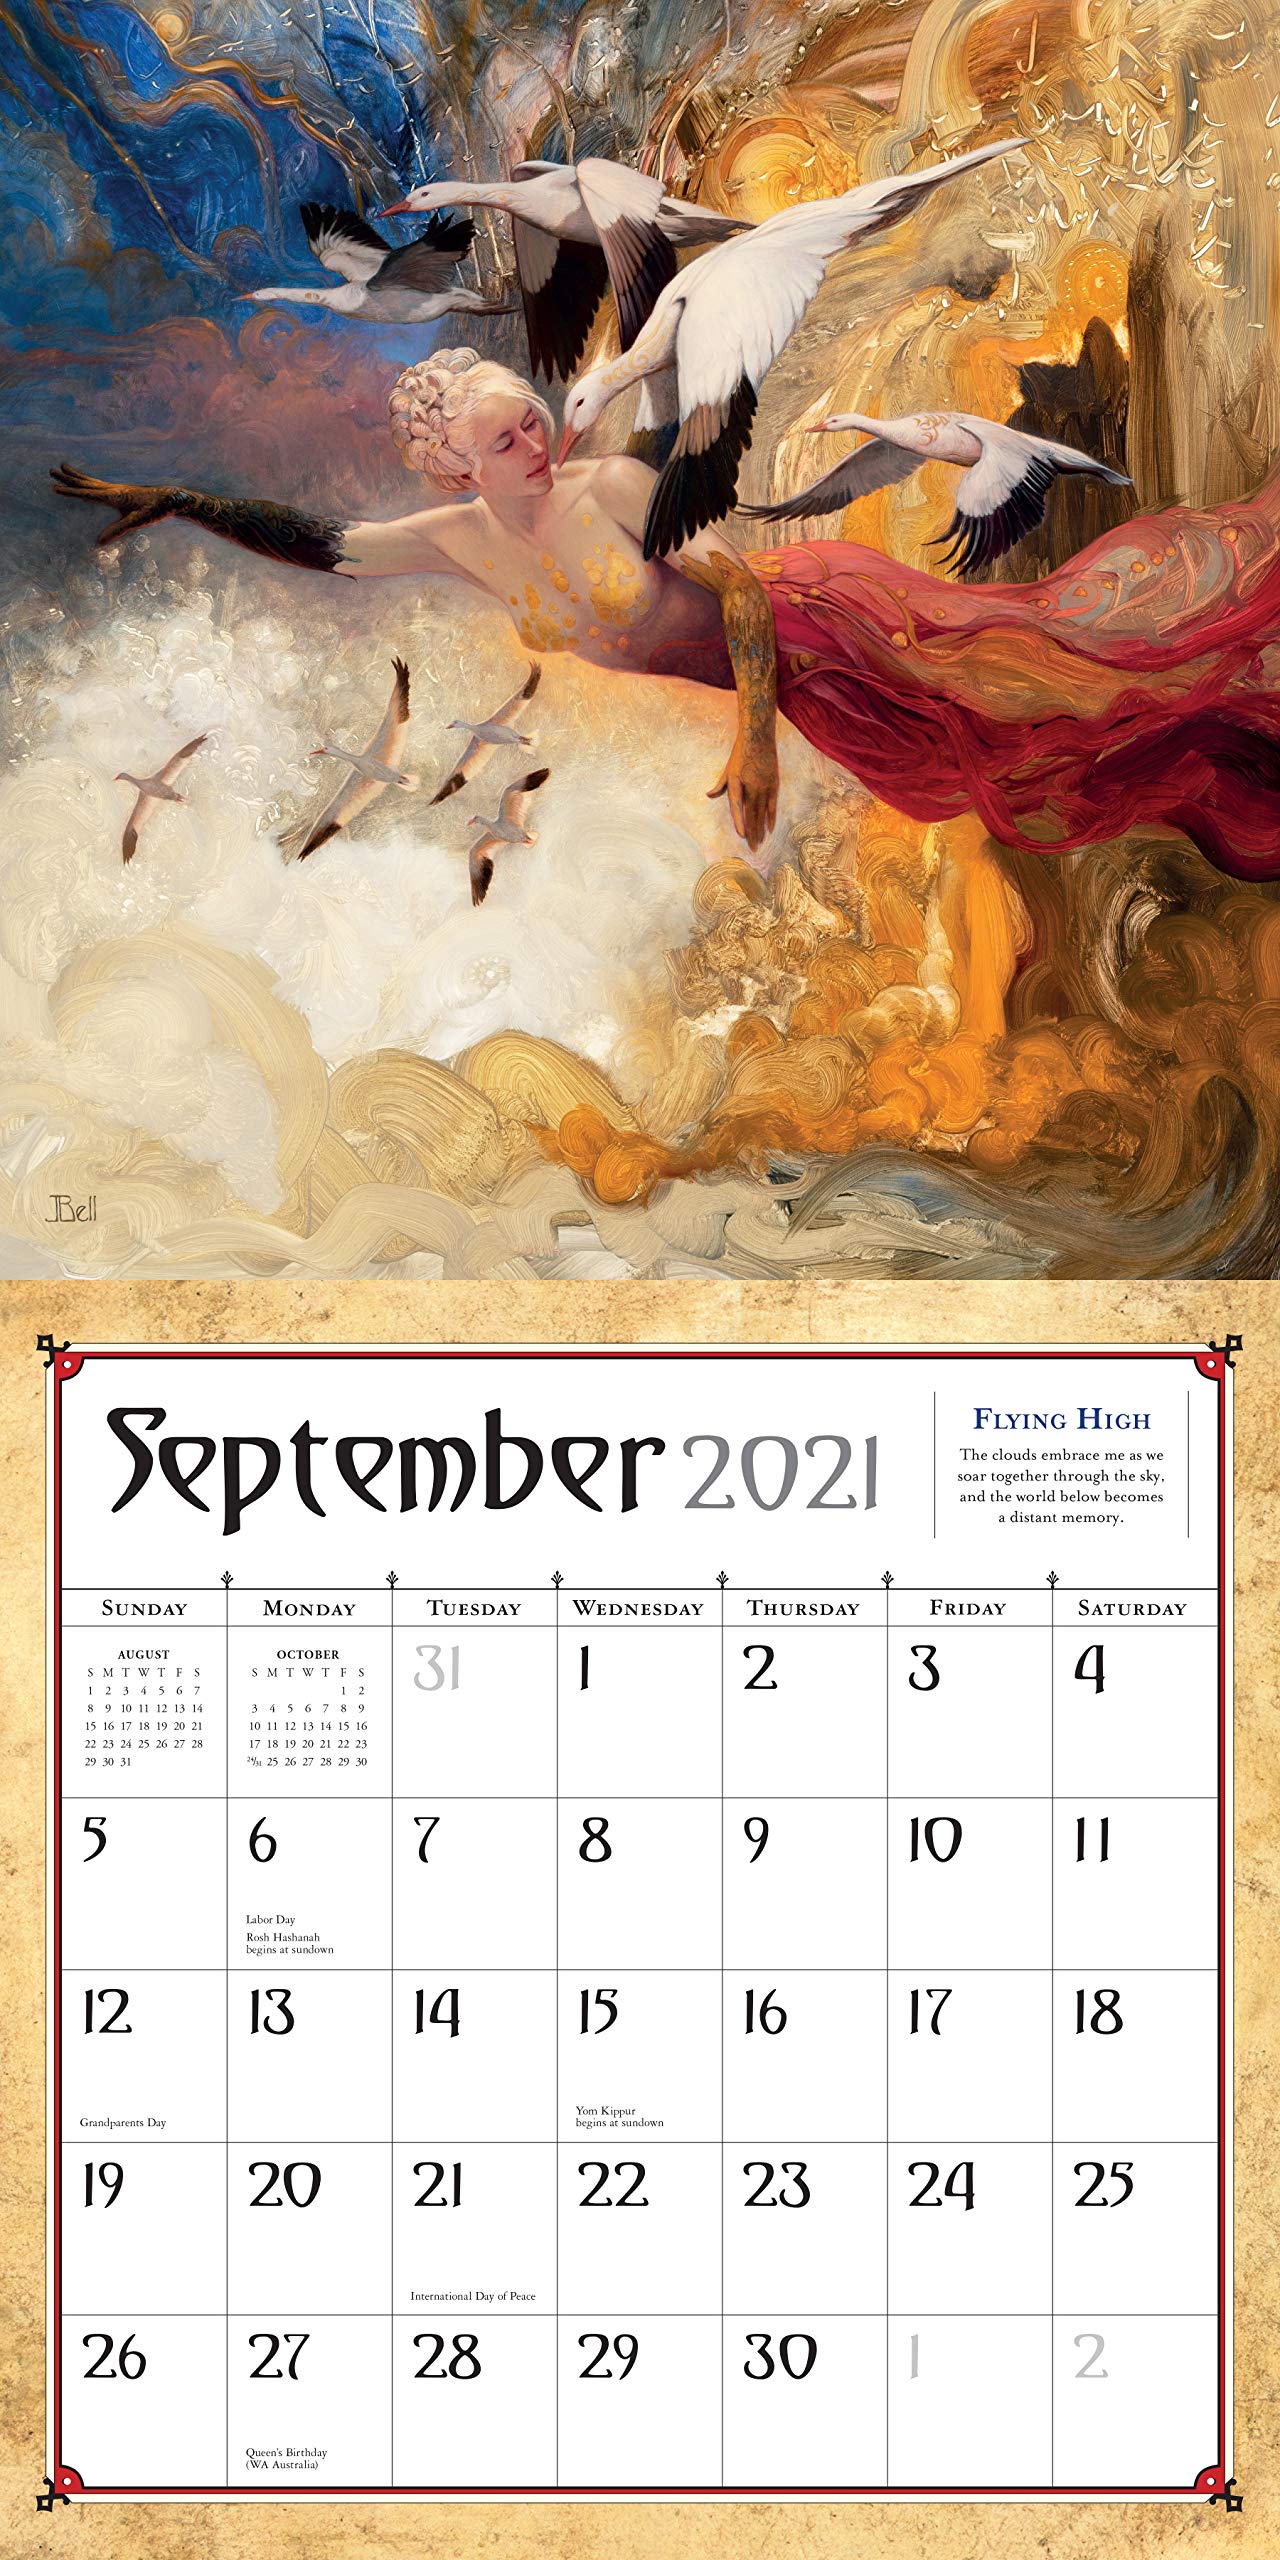 Boris Vallejo and Julie Bell's Fantasy Wall Calendar 2021